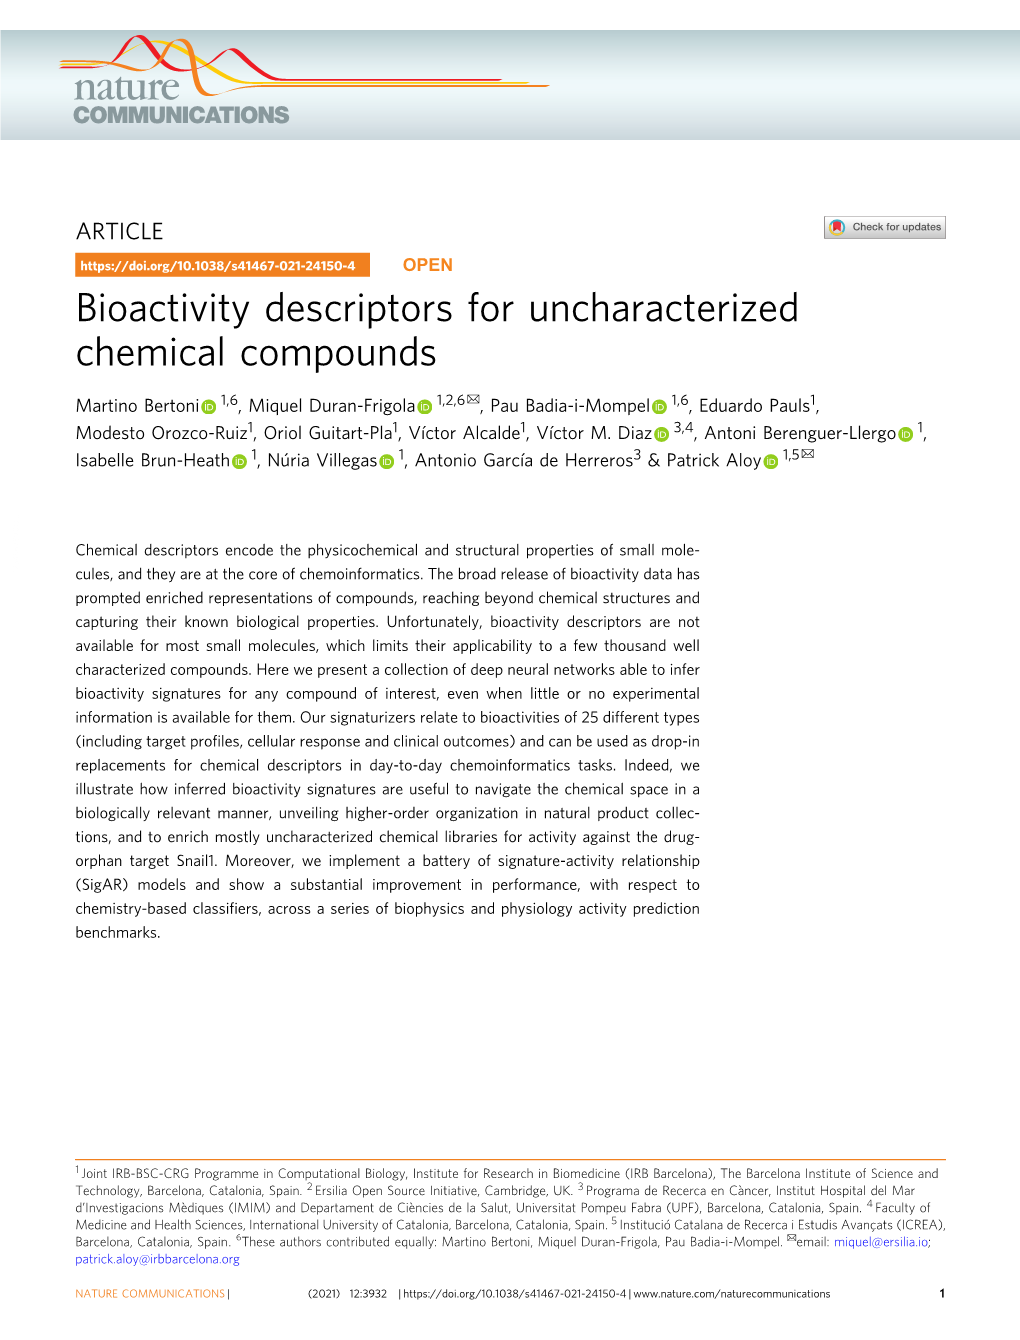 Bioactivity Descriptors for Uncharacterized Chemical Compounds